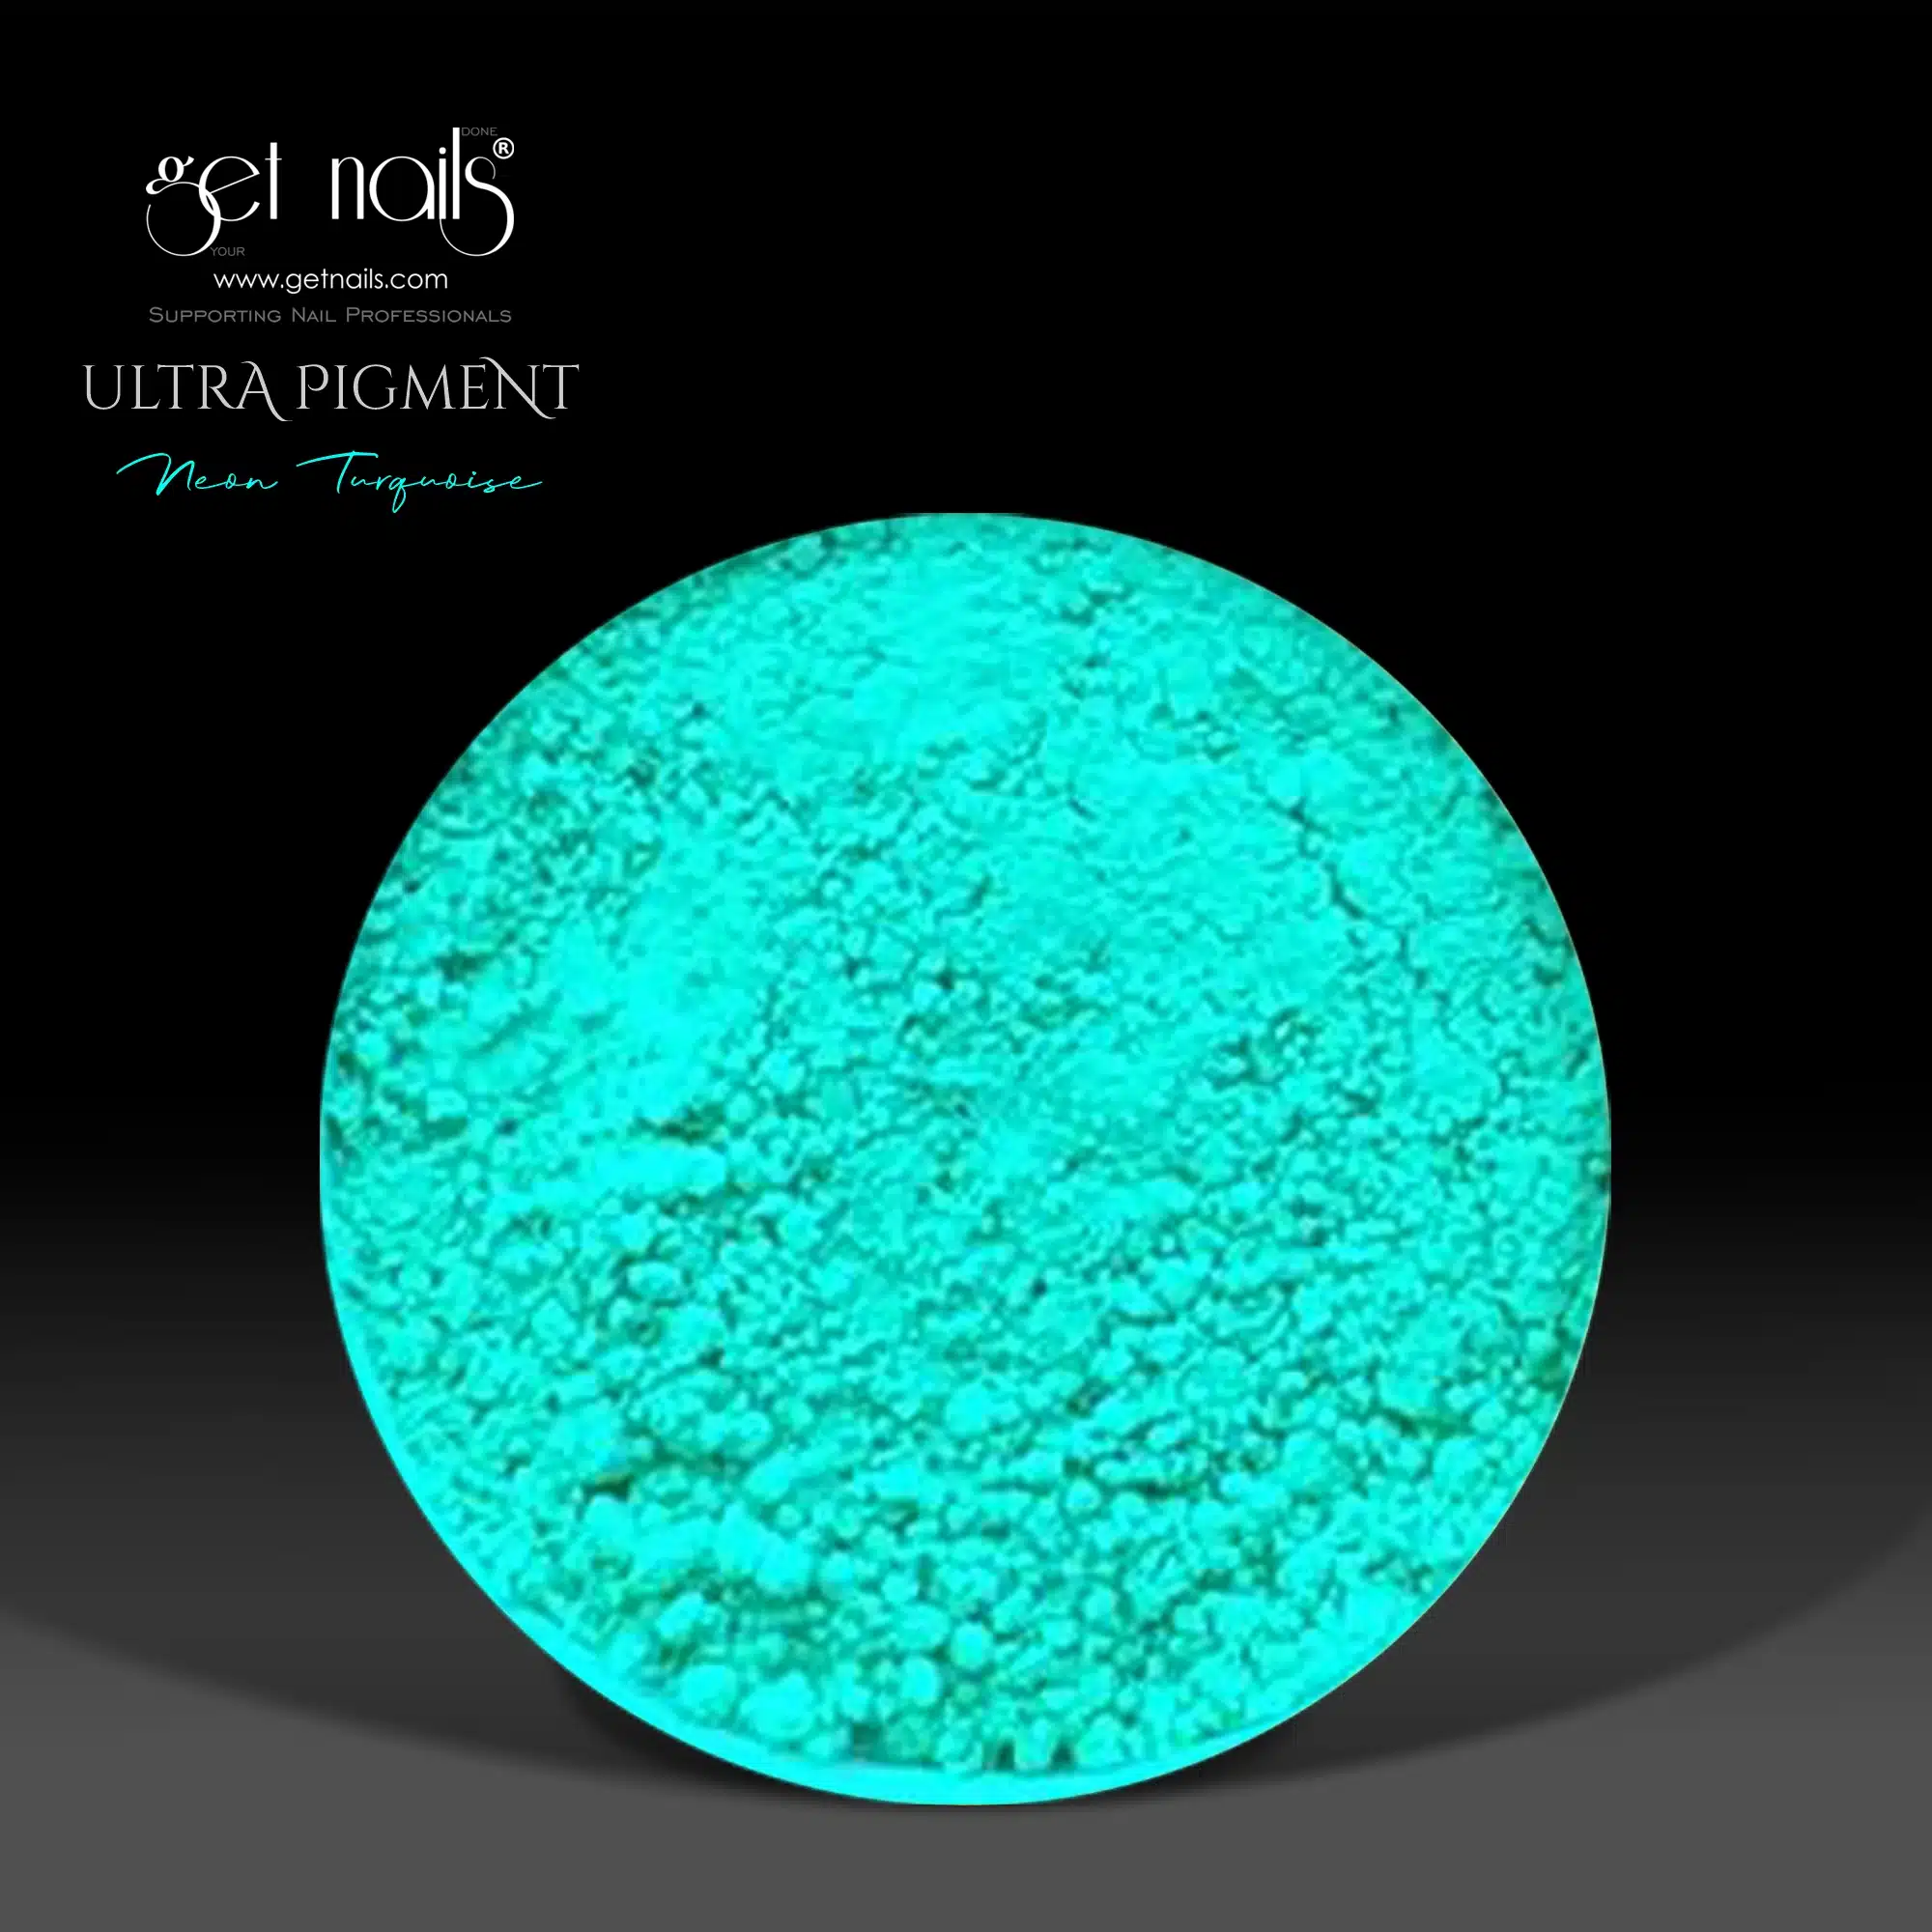 Get Nails Austria - Ультрапигмент неоновый бирюзовый 1.5г